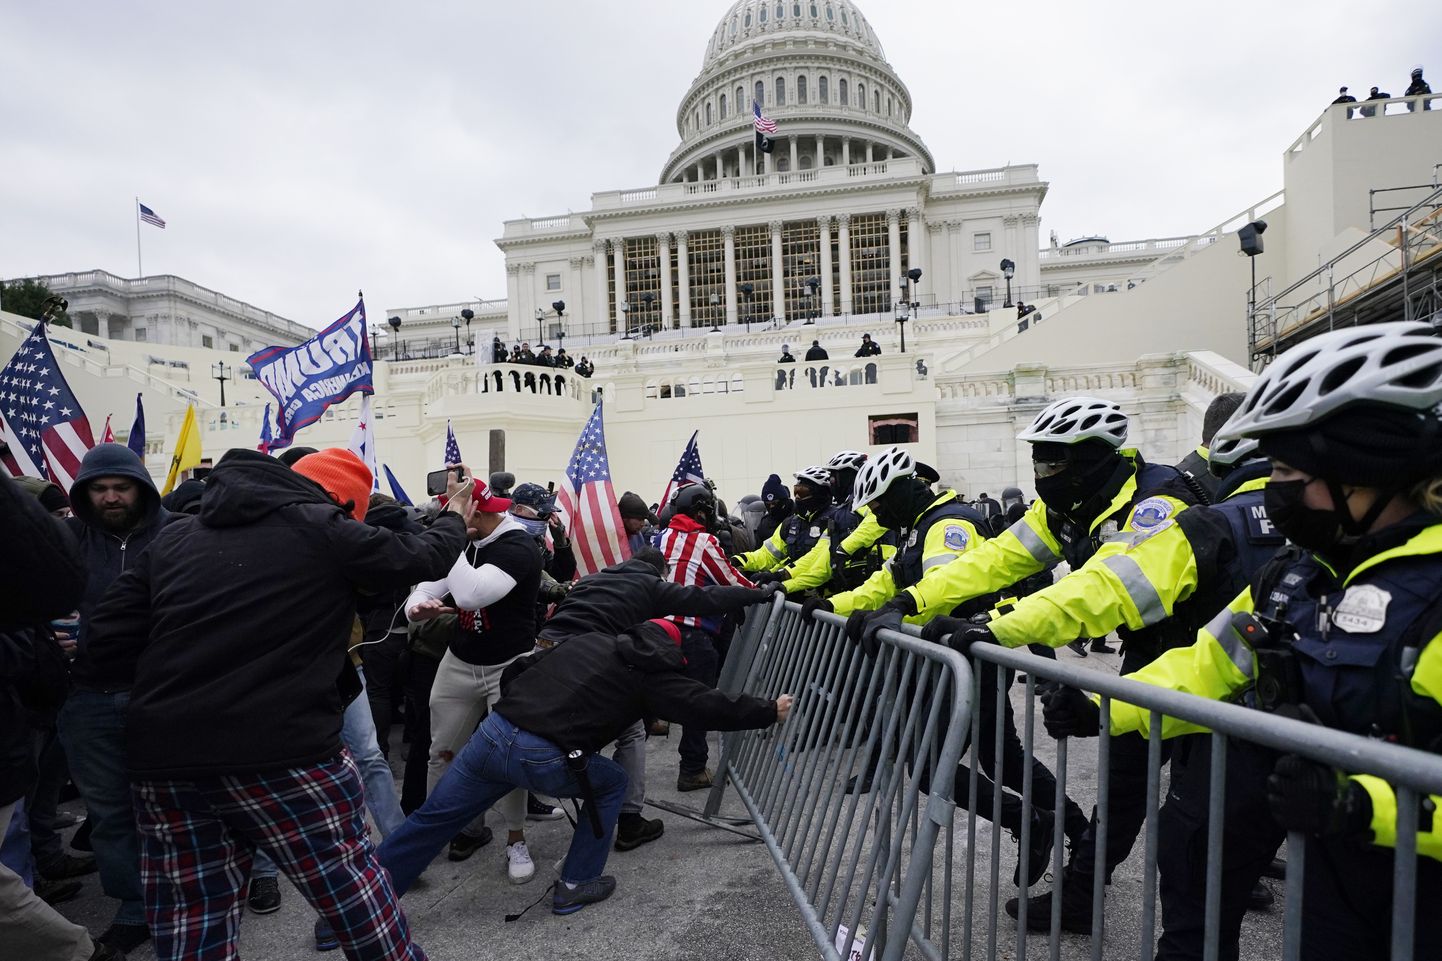 USA presidendi Donald Trumpi toetajad ründasid 6. jaanuaril 2021 Washingtonis asuvat Kapitooliumit. USA võimud on esitanud ründajatele süüdistuse vägivallas ja politseinike ründamises.